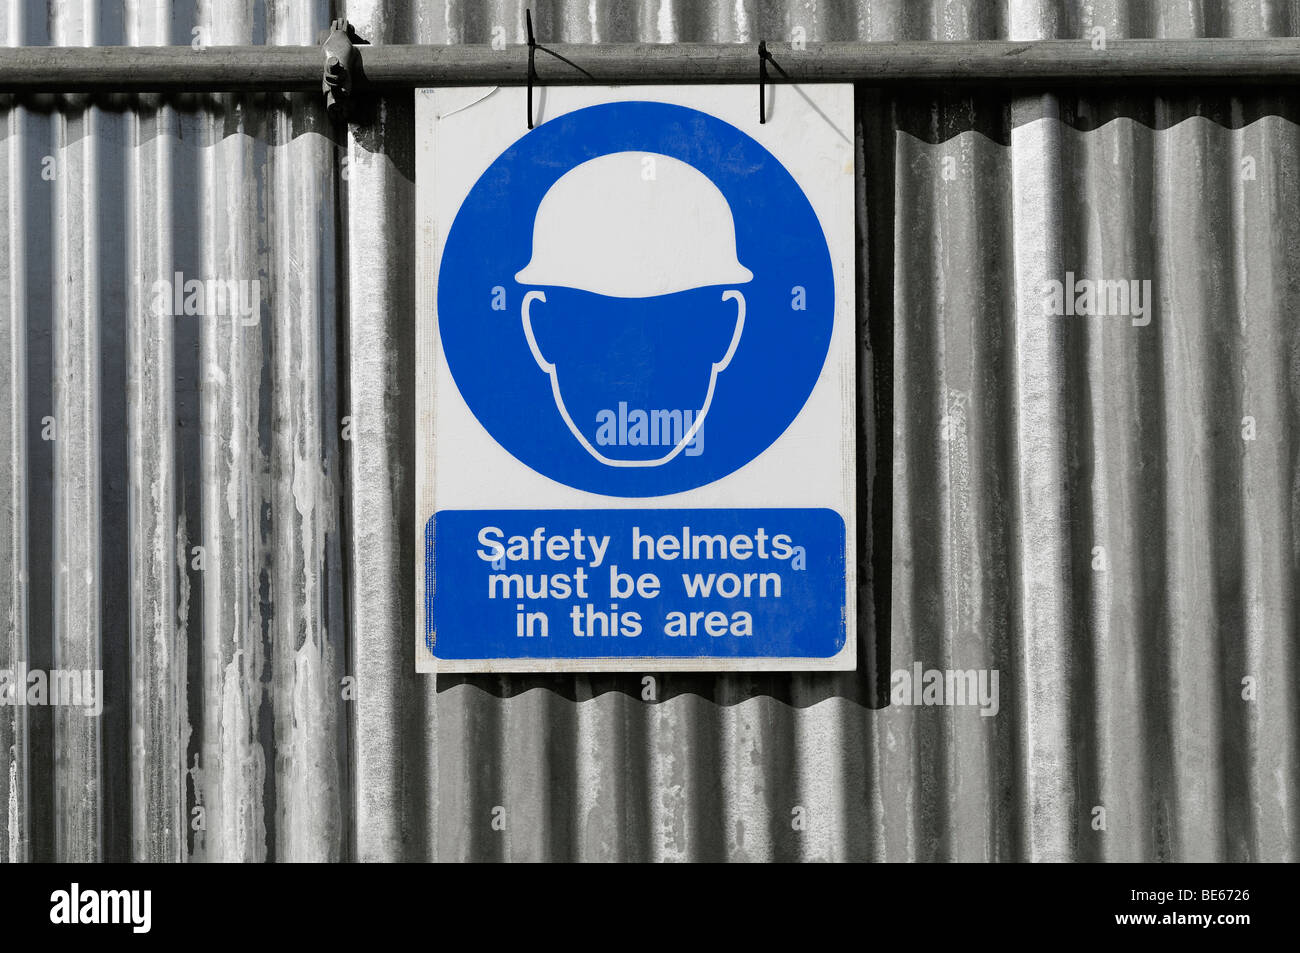 Firmar en un sitio de construcción advierte que los cascos deben ser usados en el sitio. Foto de stock